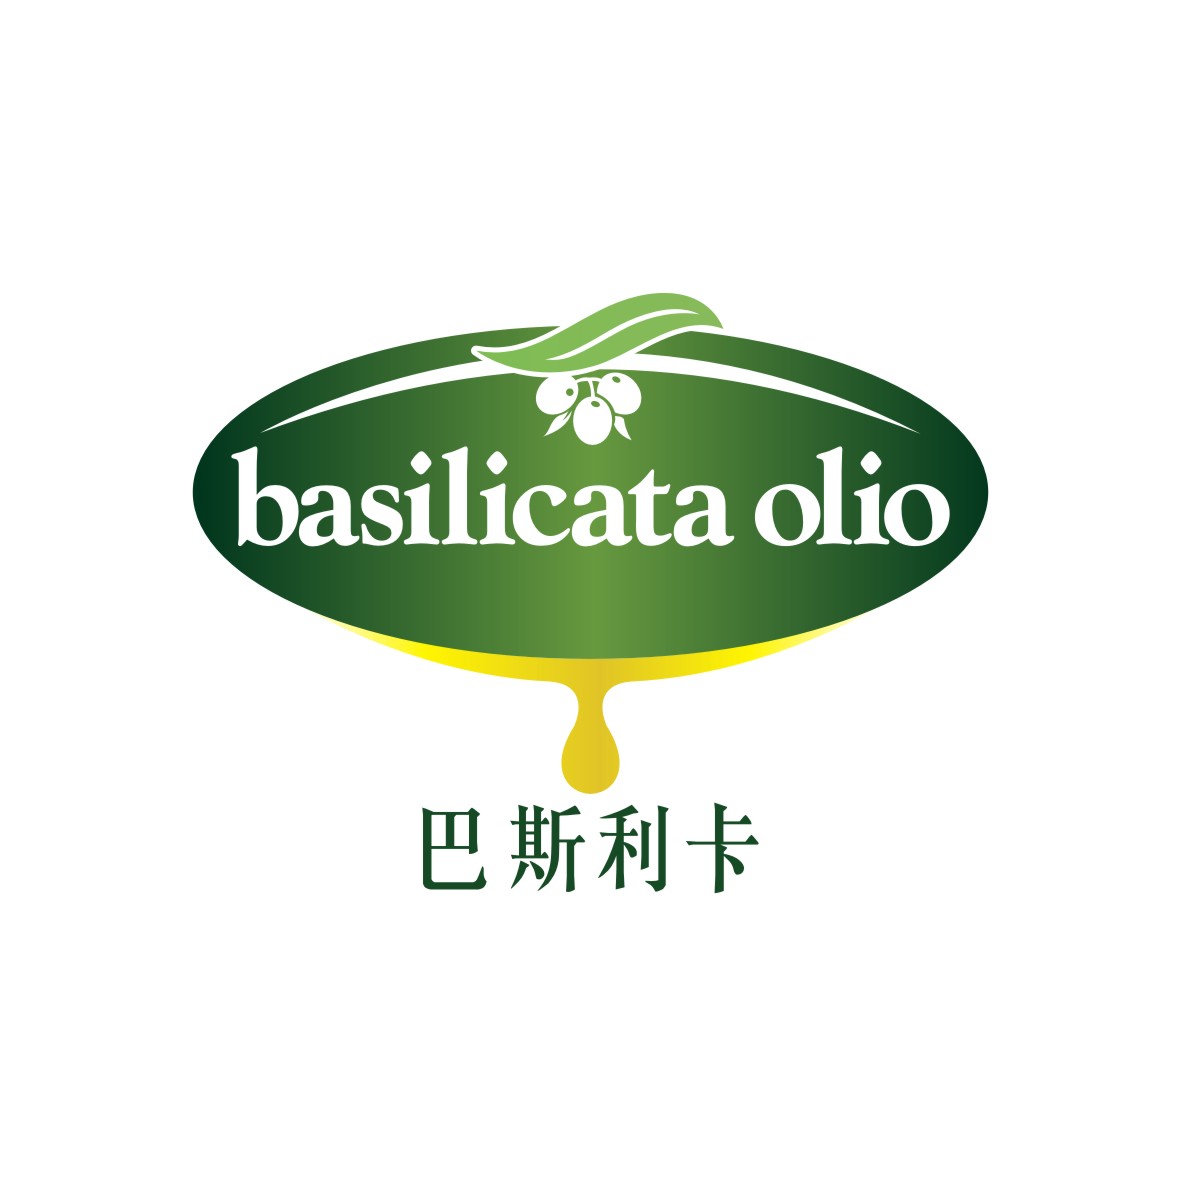 广州市至拓创意家居有限公司商标巴斯利卡 BASILICATA OLIO（29类）商标买卖平台报价，上哪个平台最省钱？